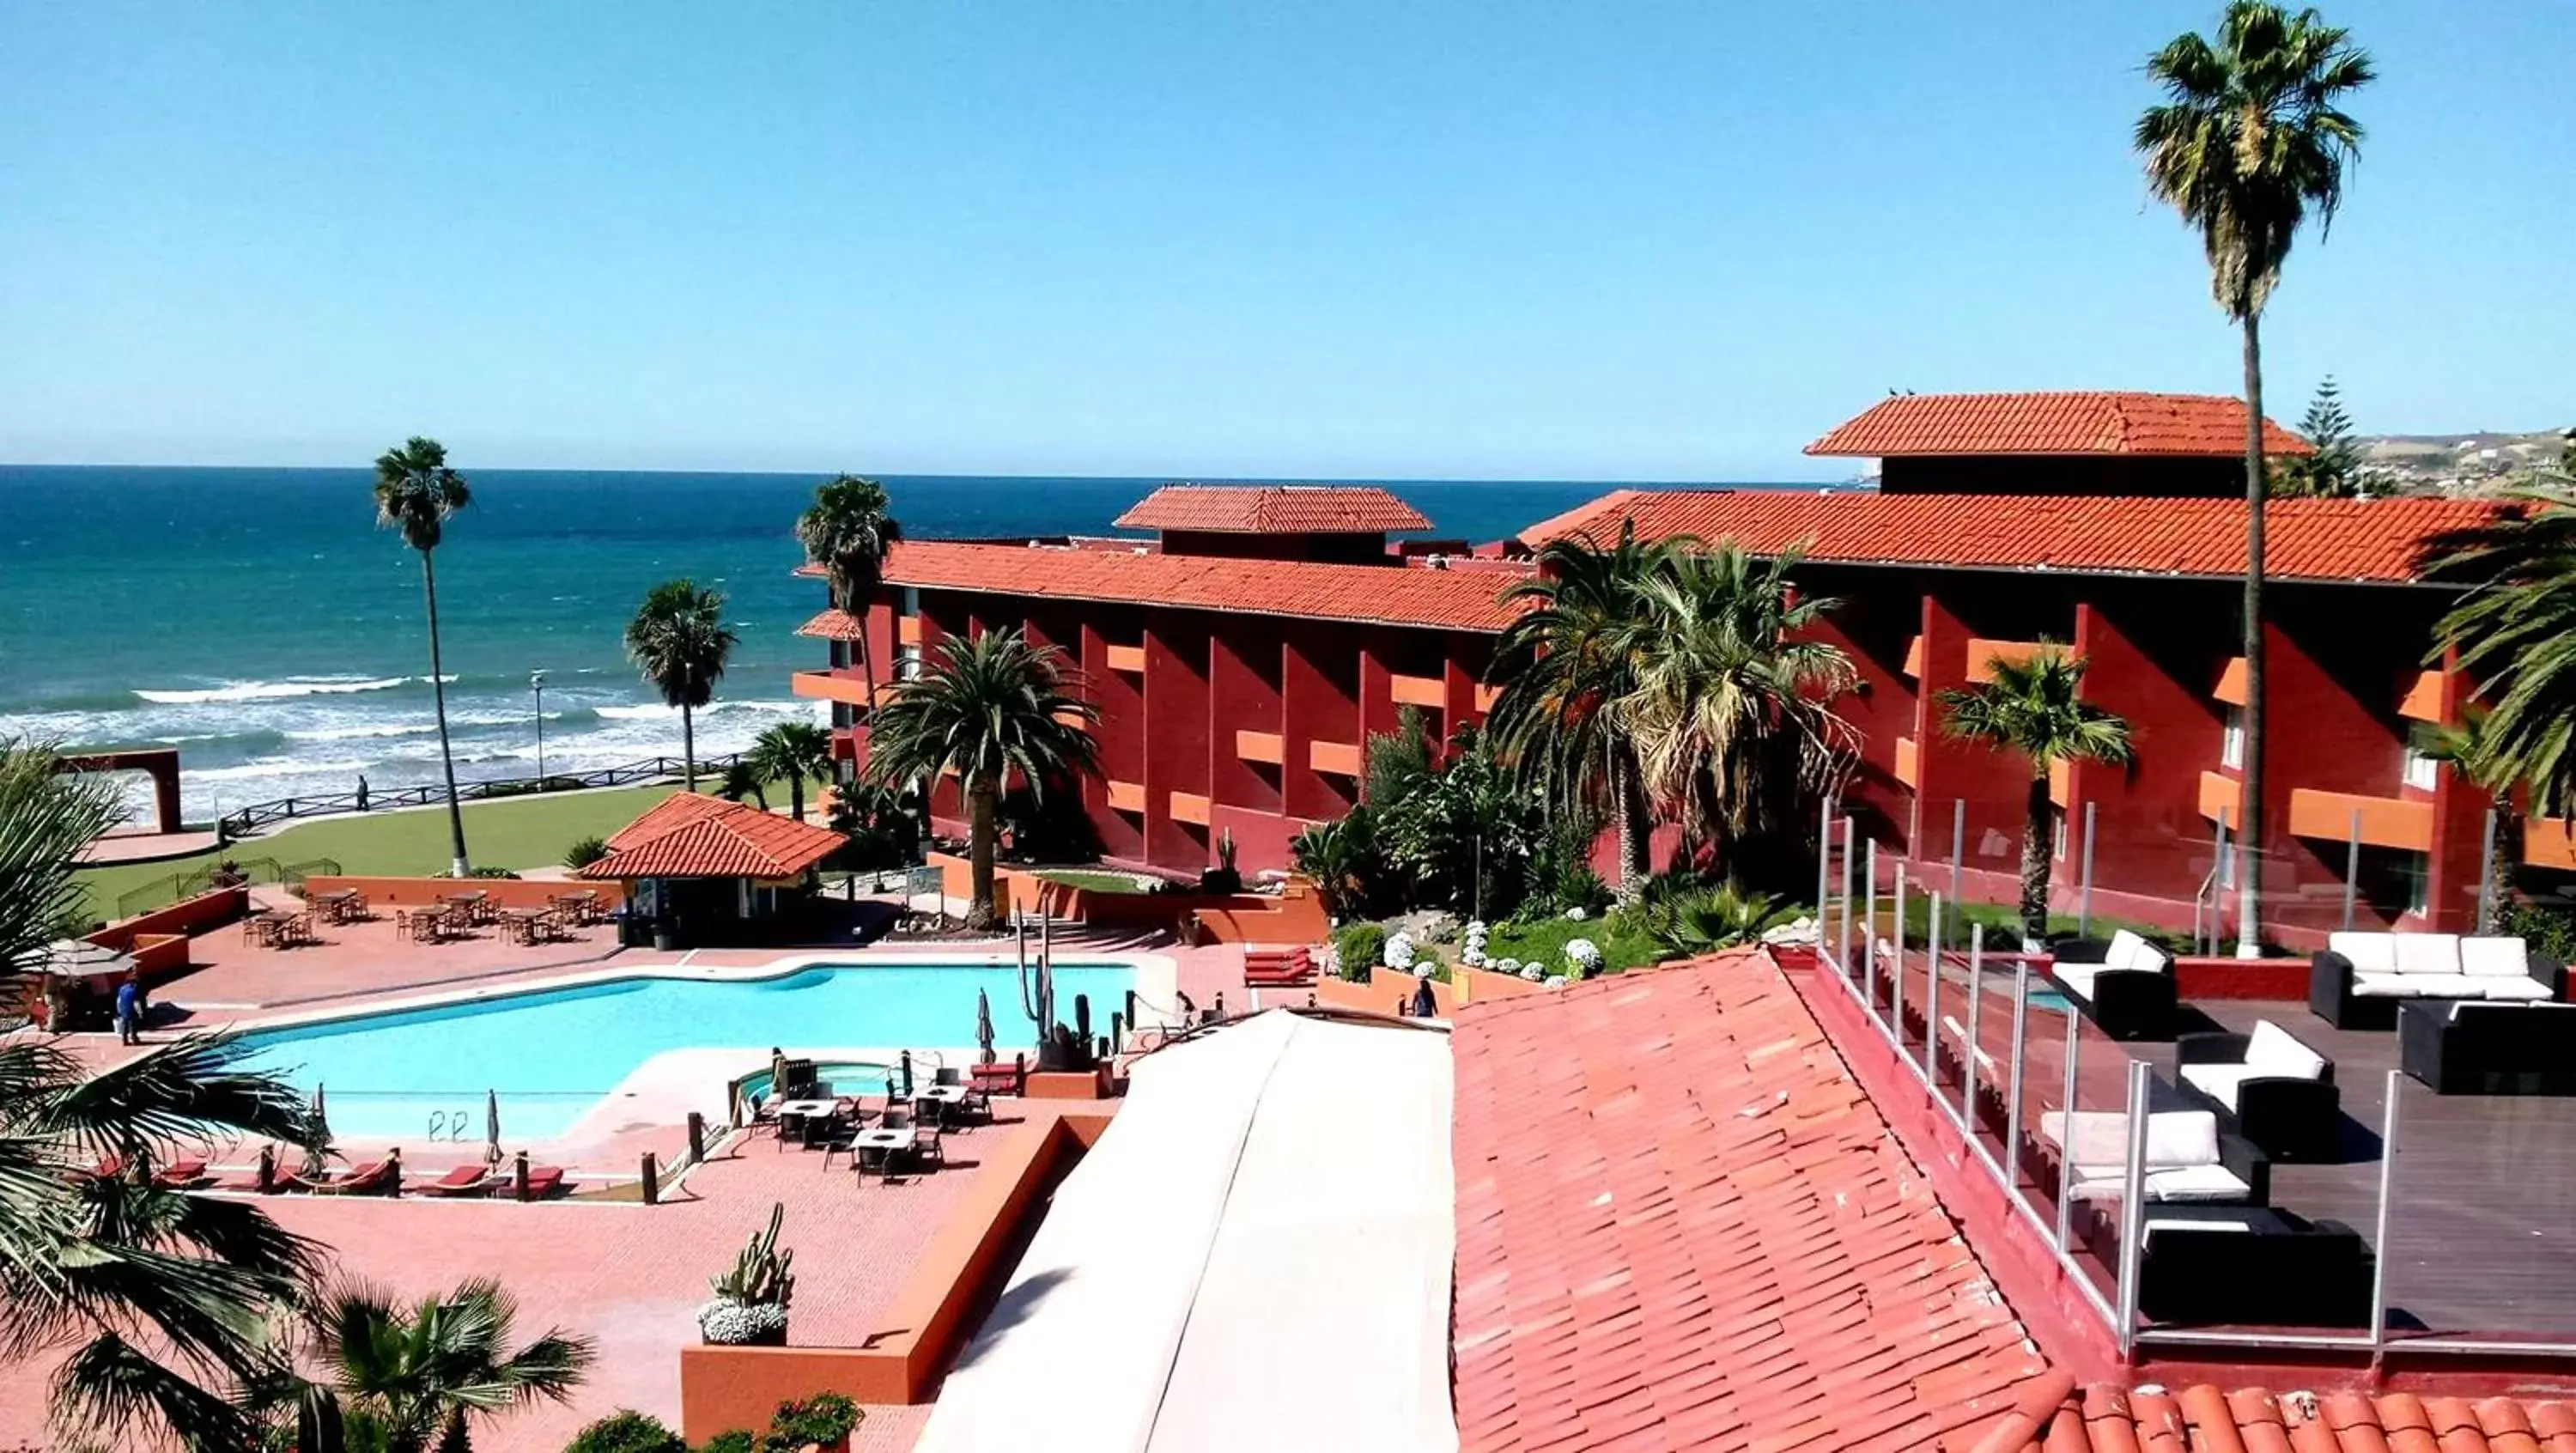 Balcony/Terrace, Pool View in Puerto Nuevo Baja Hotel & Villas